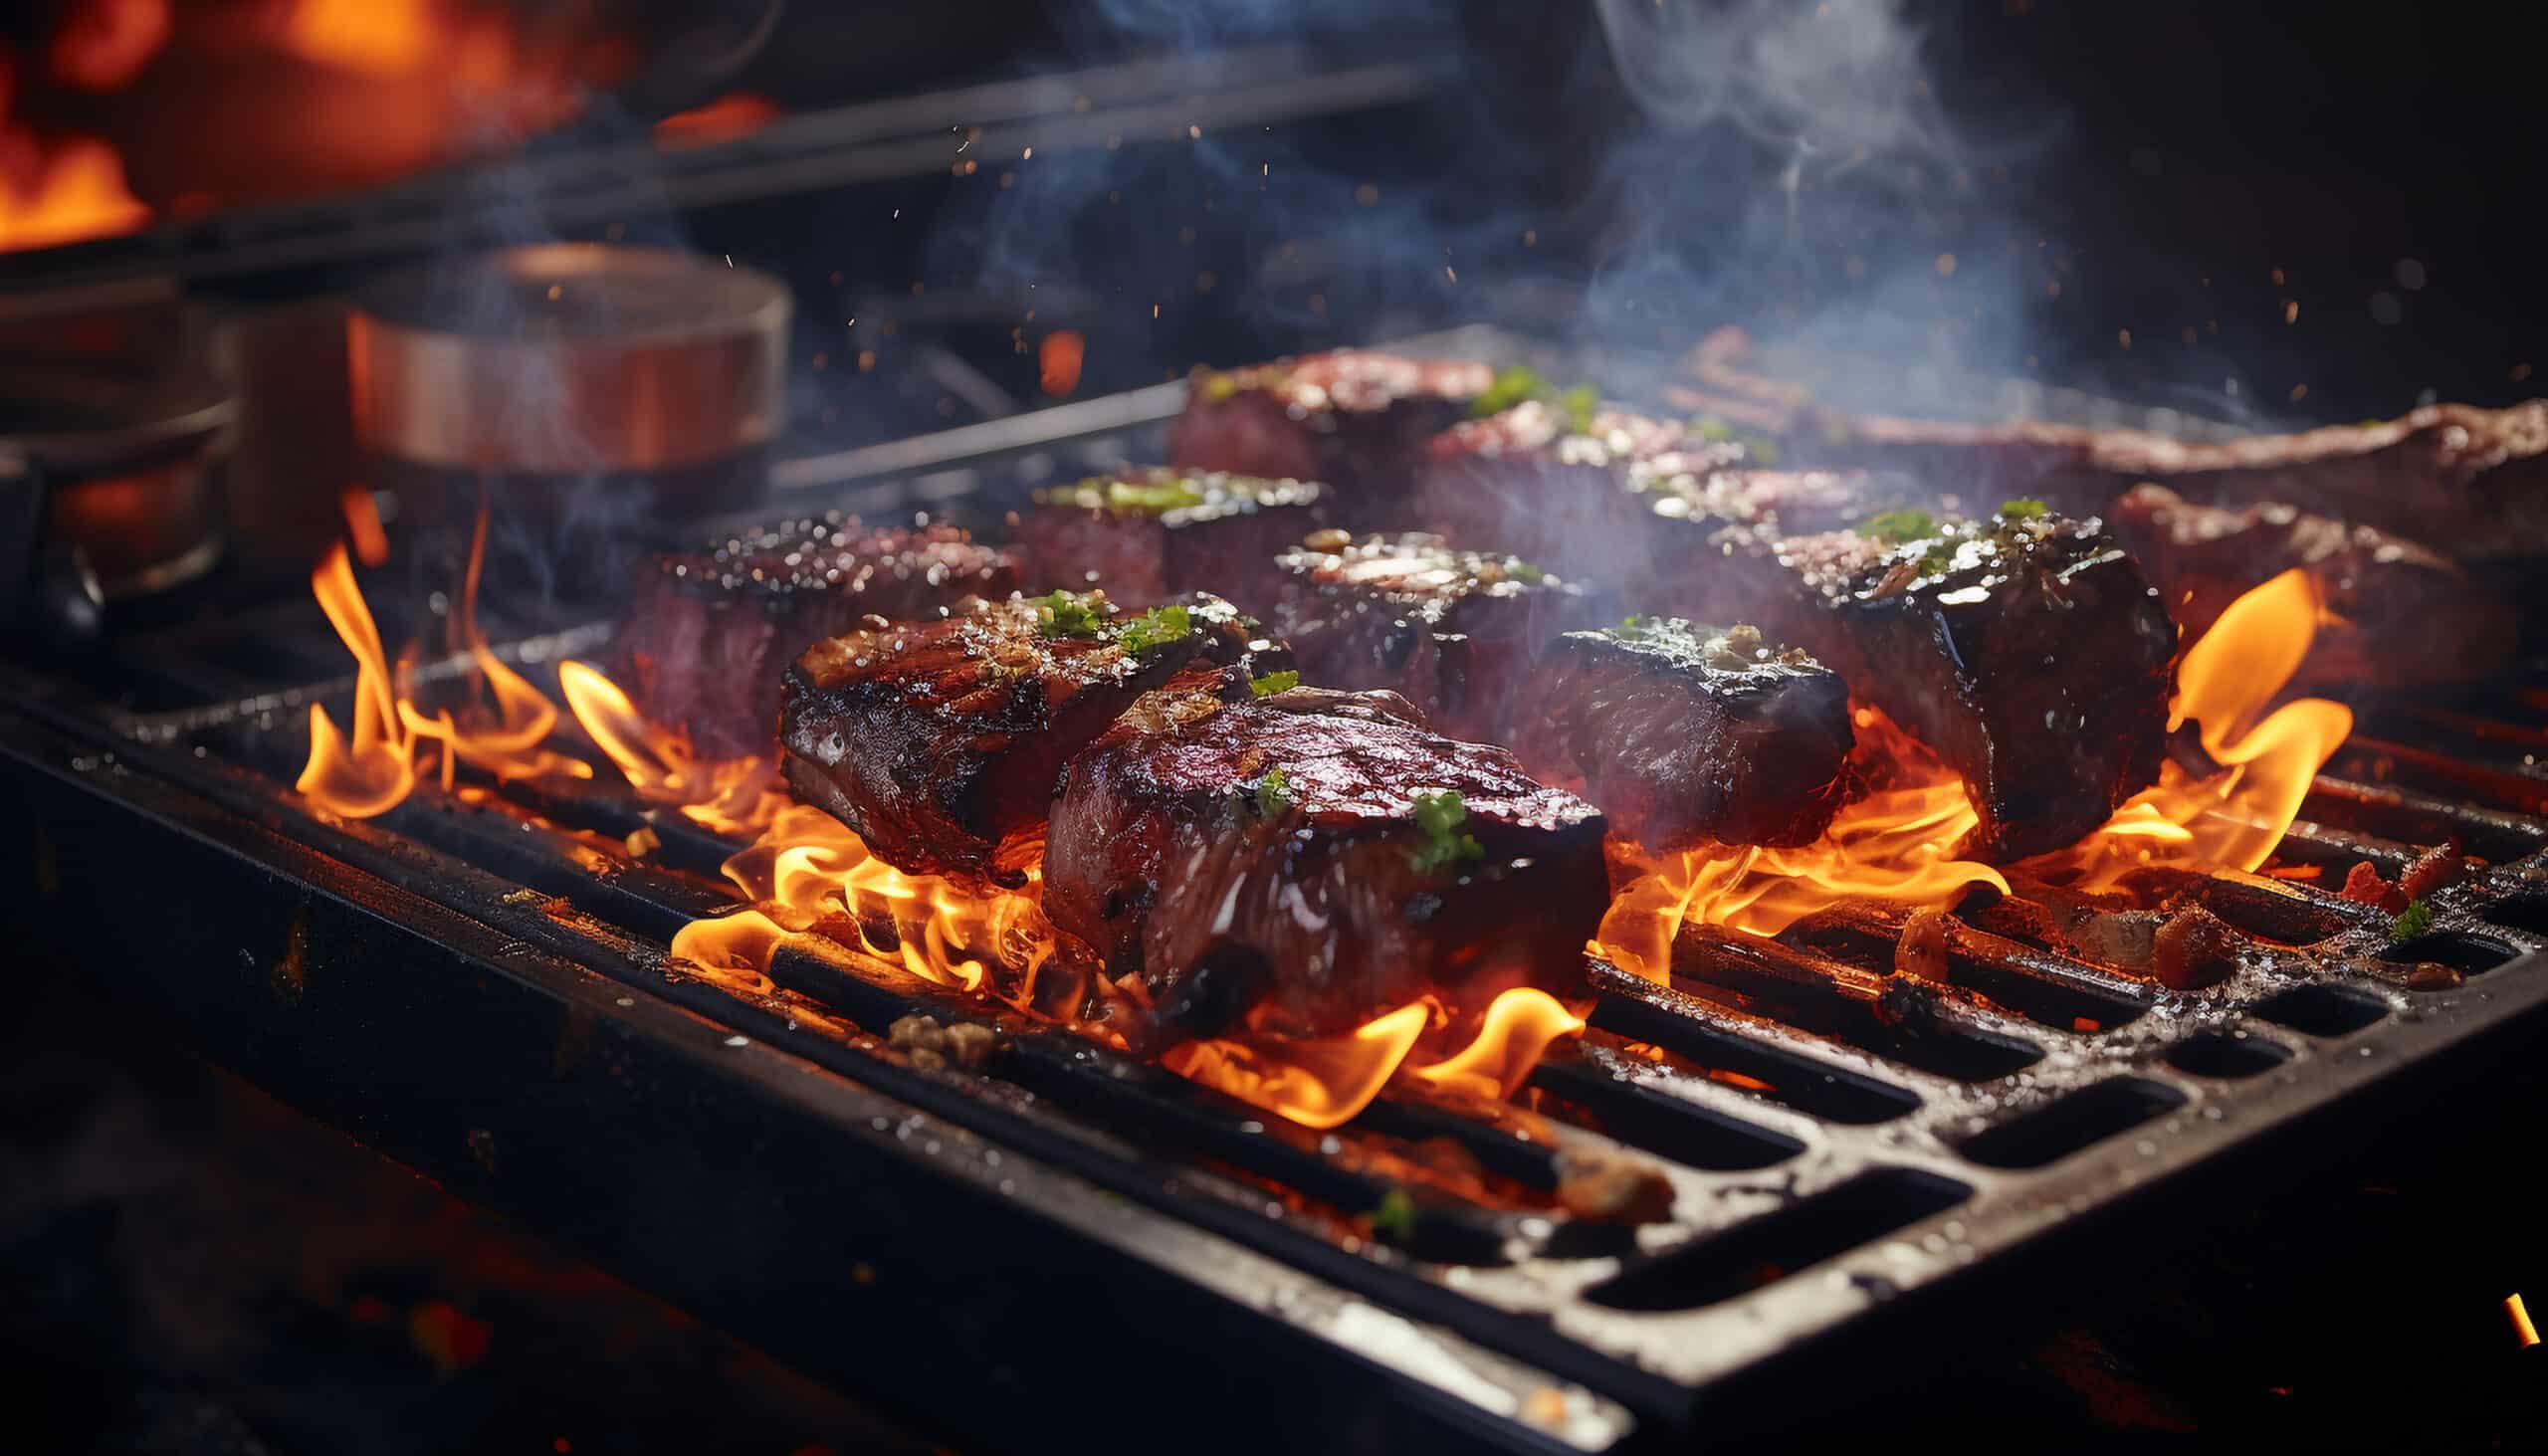 www.appr.com : How To Smoke A Steak On A Pellet Grill?